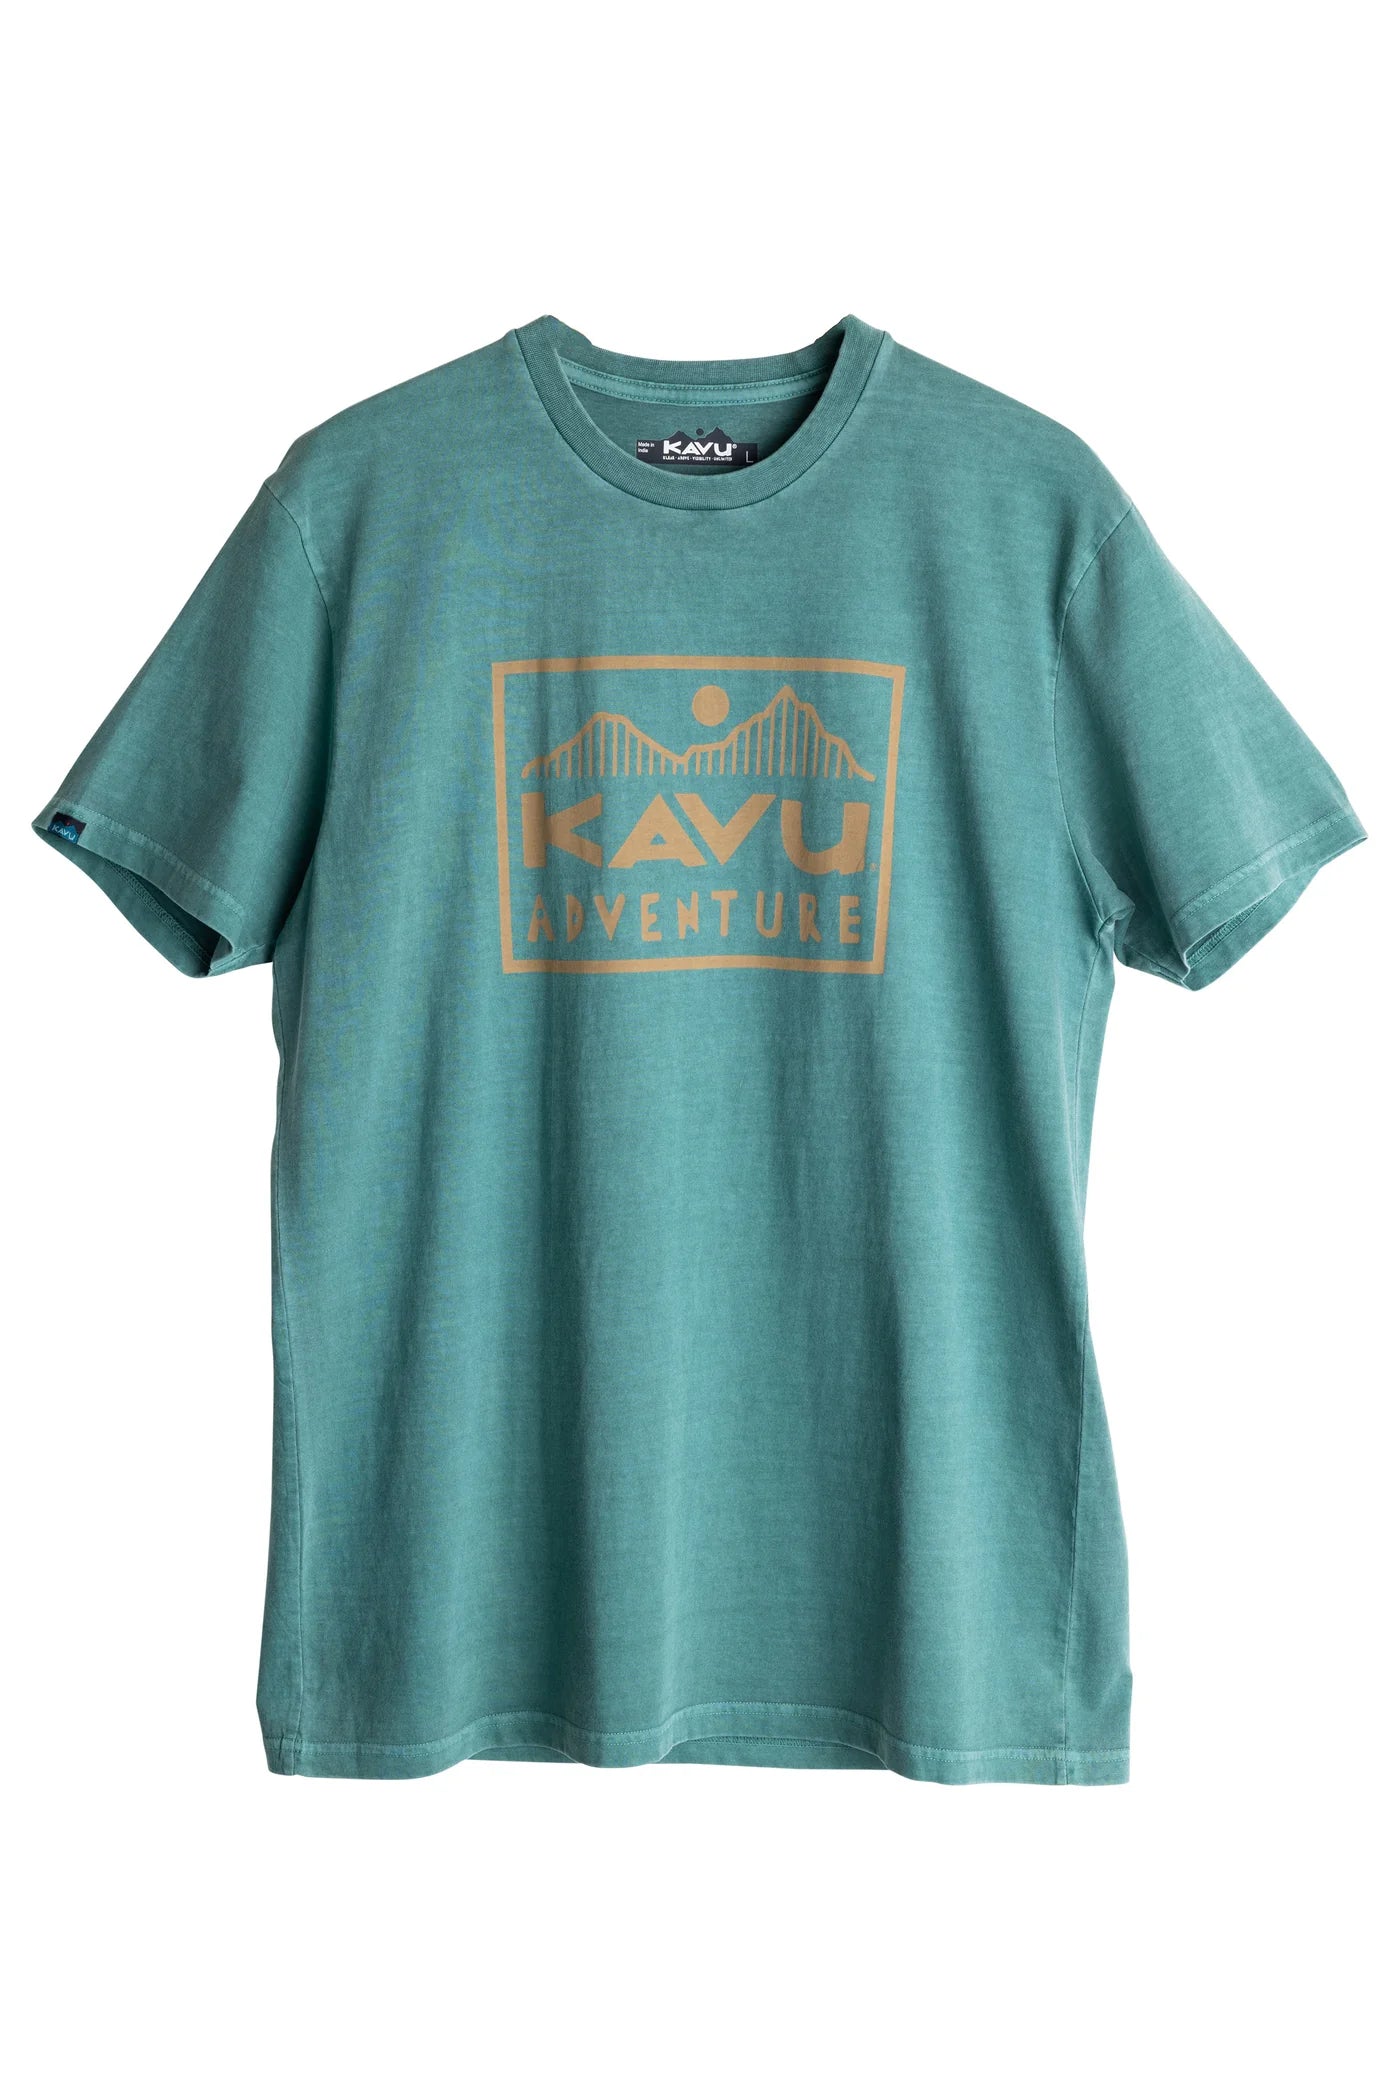 Kavu - T-Shirt Set Off Adventurine